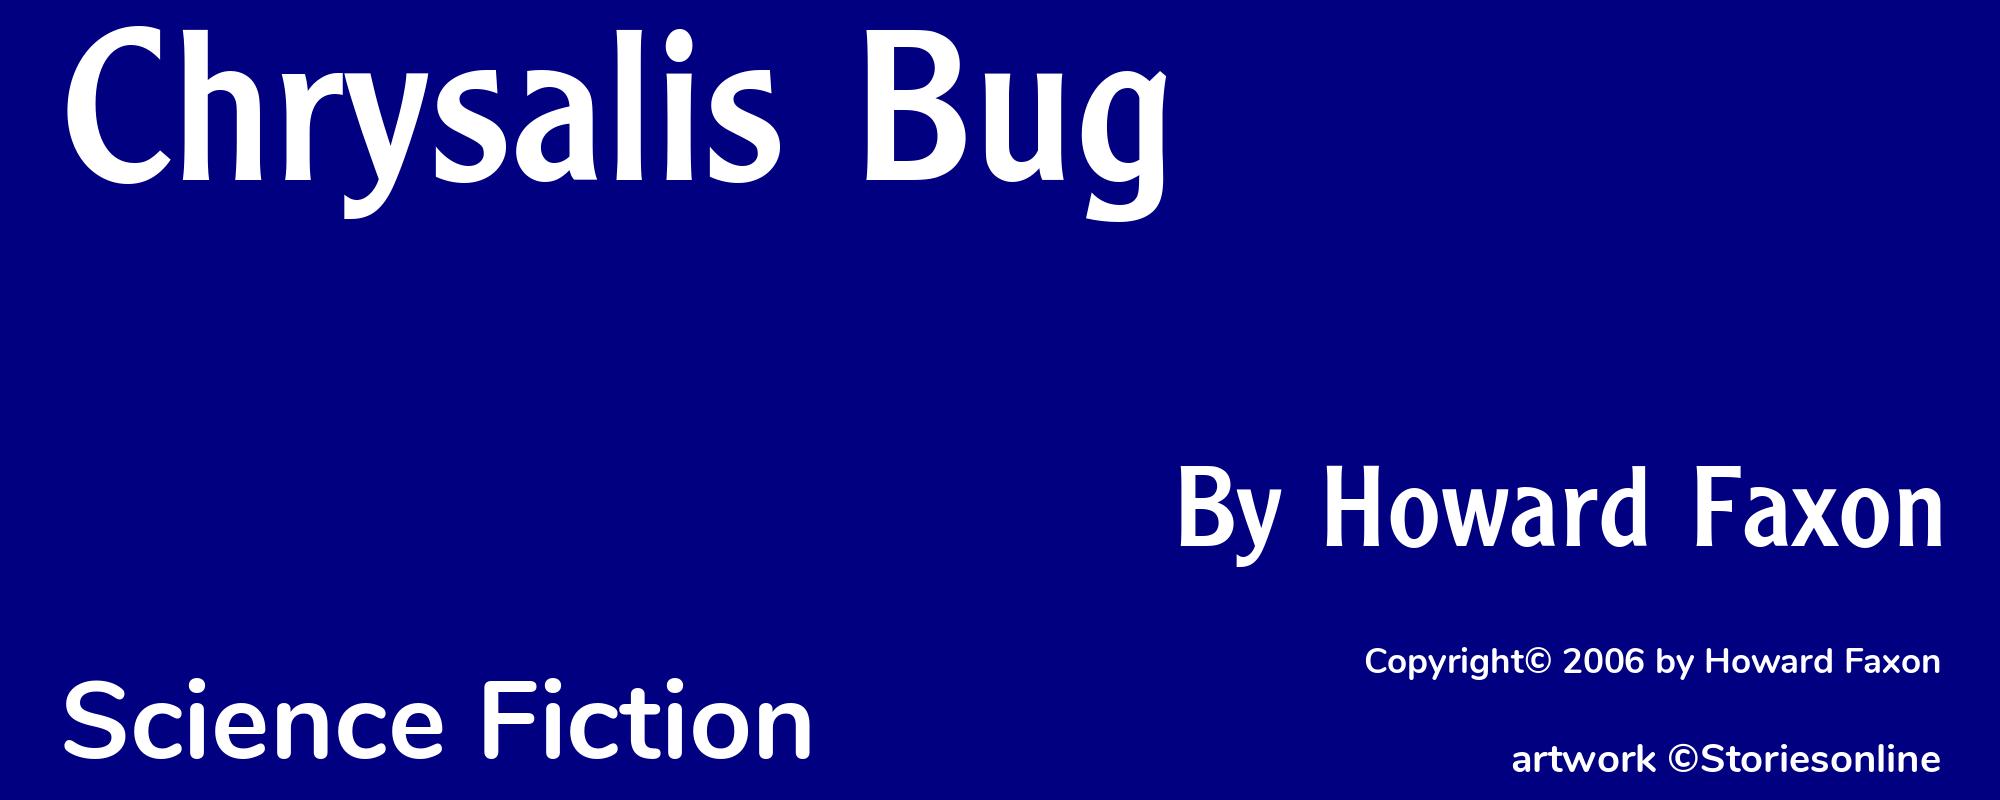 Chrysalis Bug - Cover